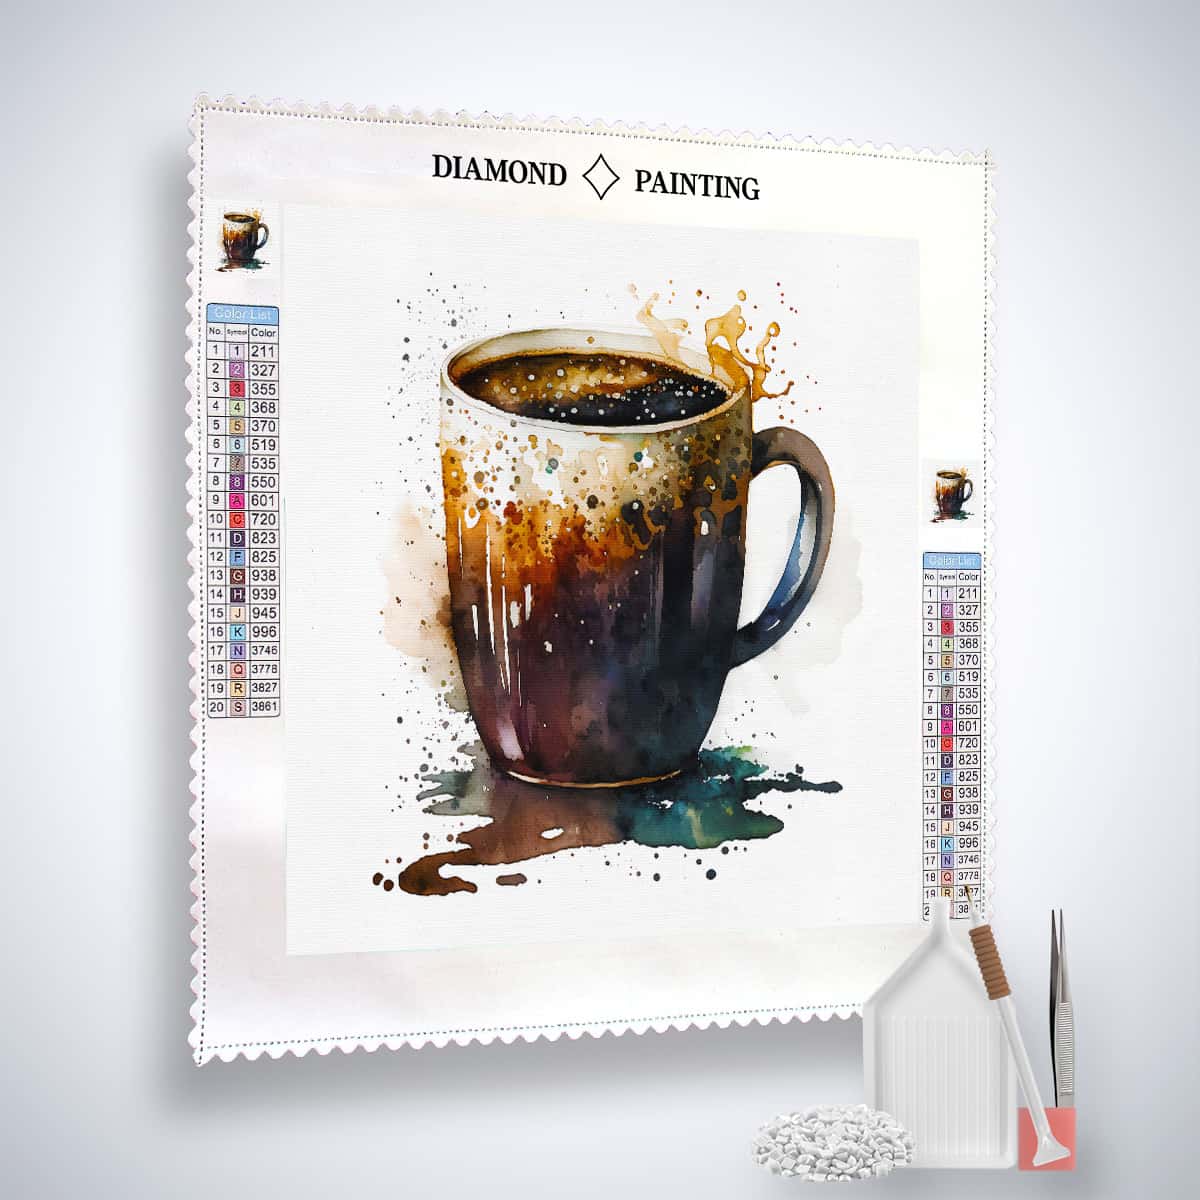 Diamond Painting - Kaffeetasse vor Weiß - gedruckt in Ultra-HD - Kaffee, Küche, Neu eingetroffen, Quadratisch